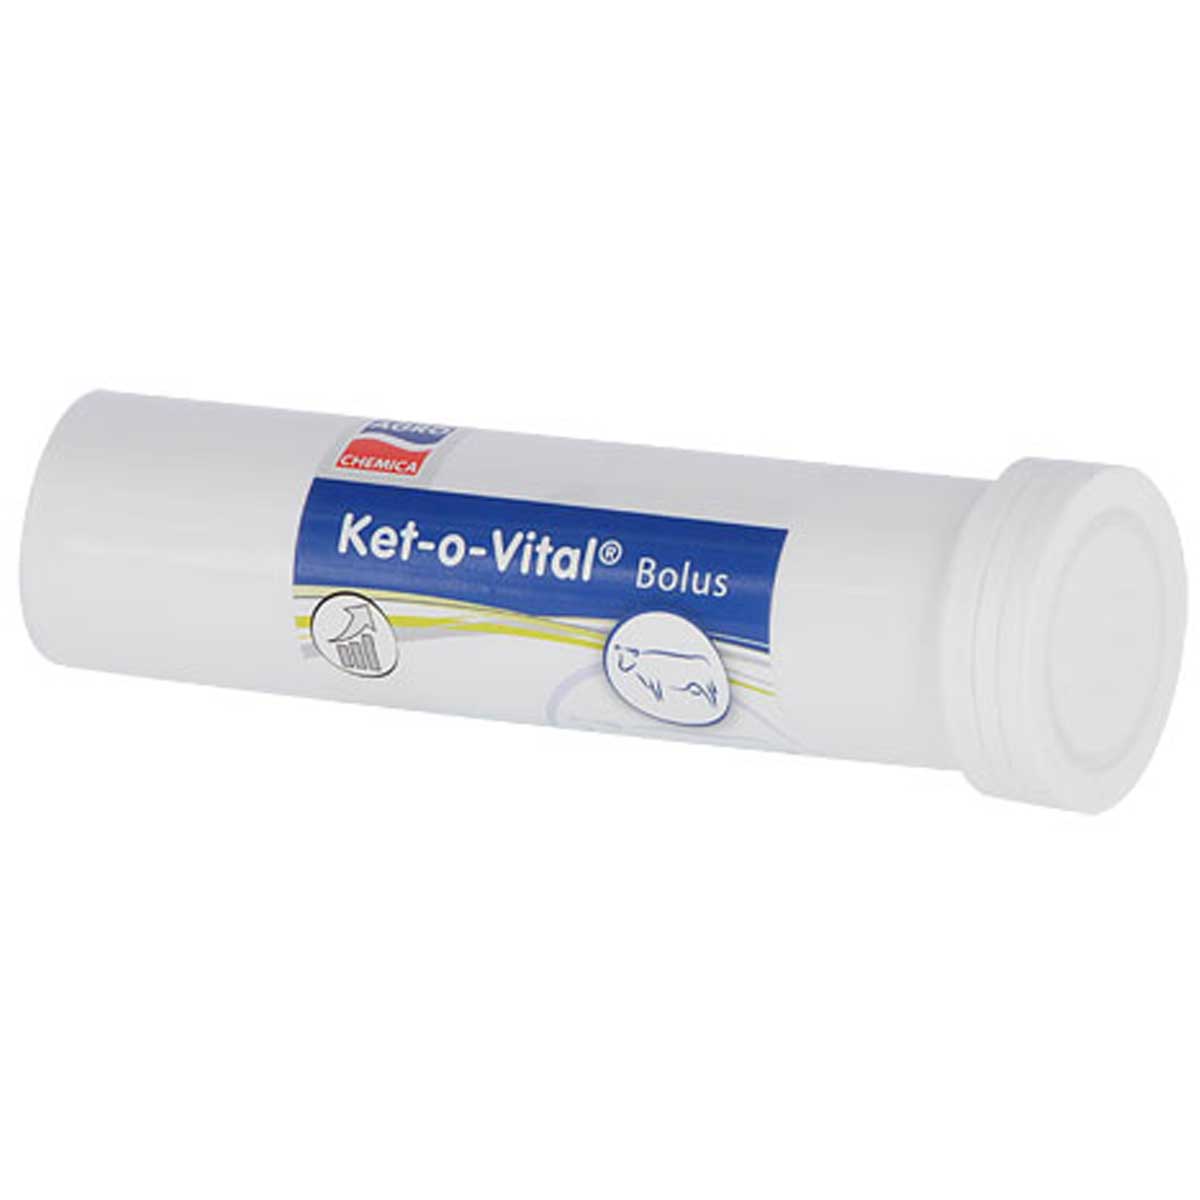 Ket-o-Vital Bolus Energibolus (Ketos)